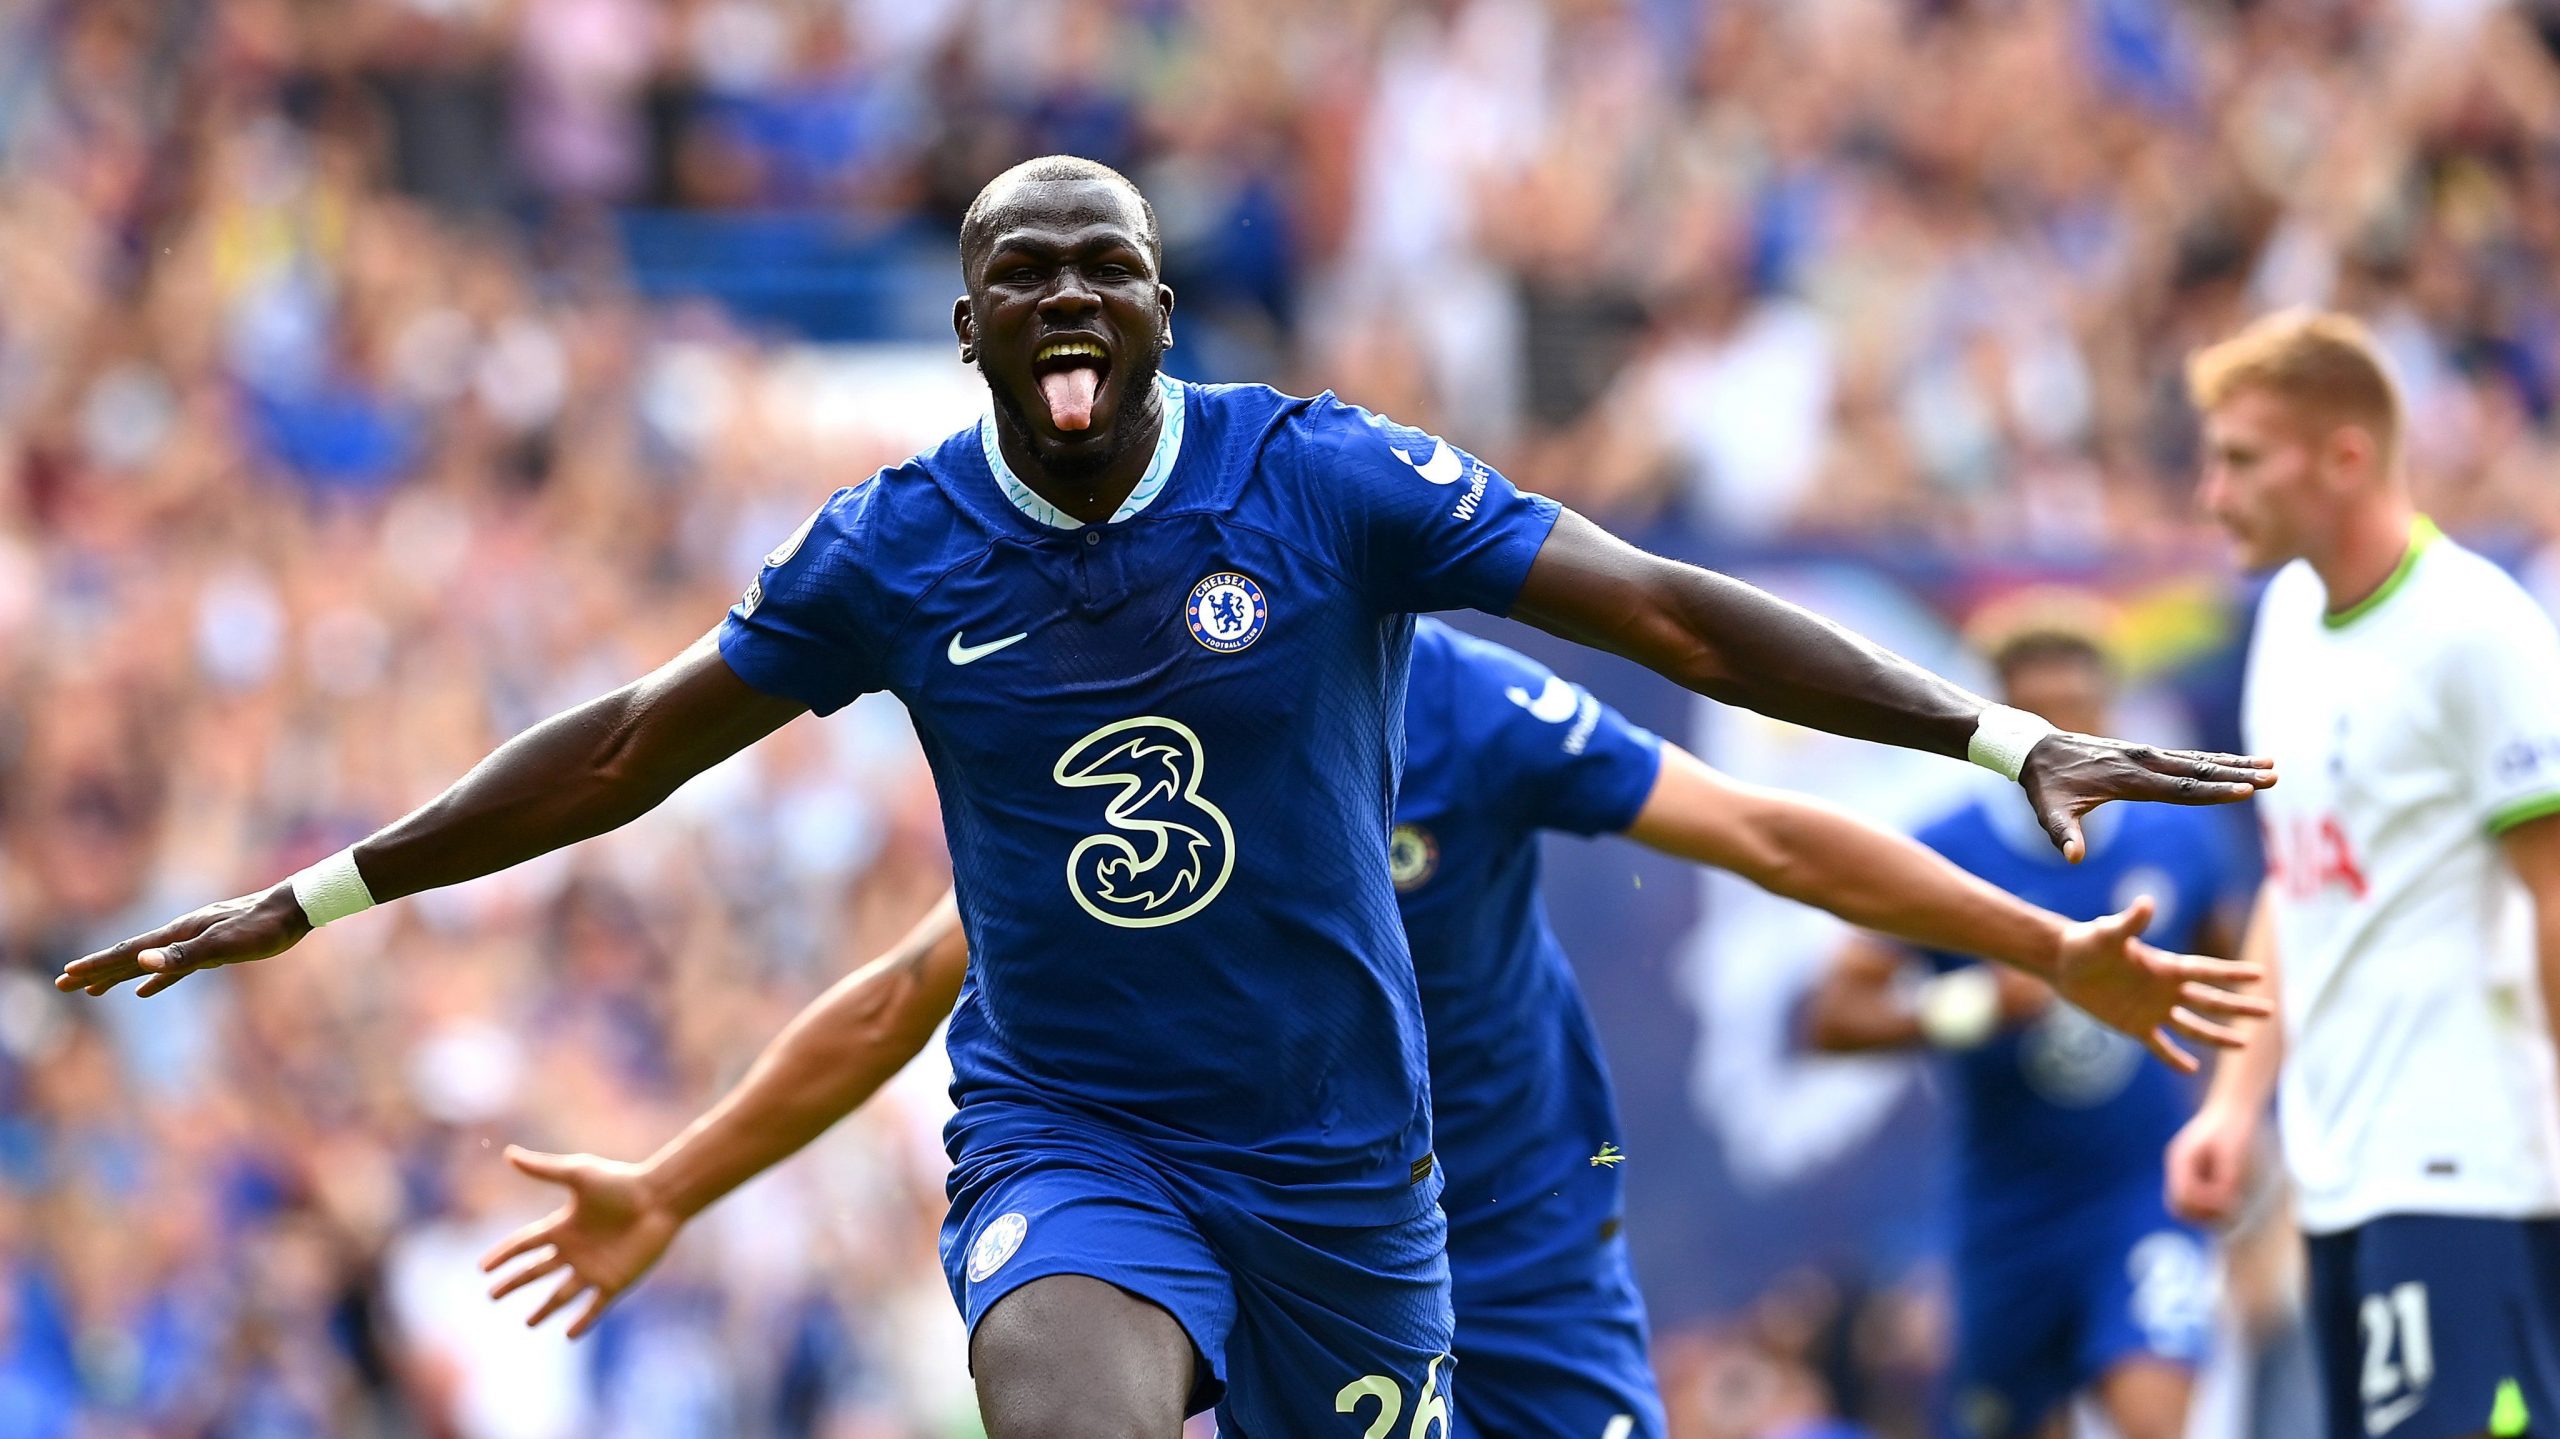 Watch: Kalidou Koulibaly scores maiden Chelsea goal against Tottenham Hotspur